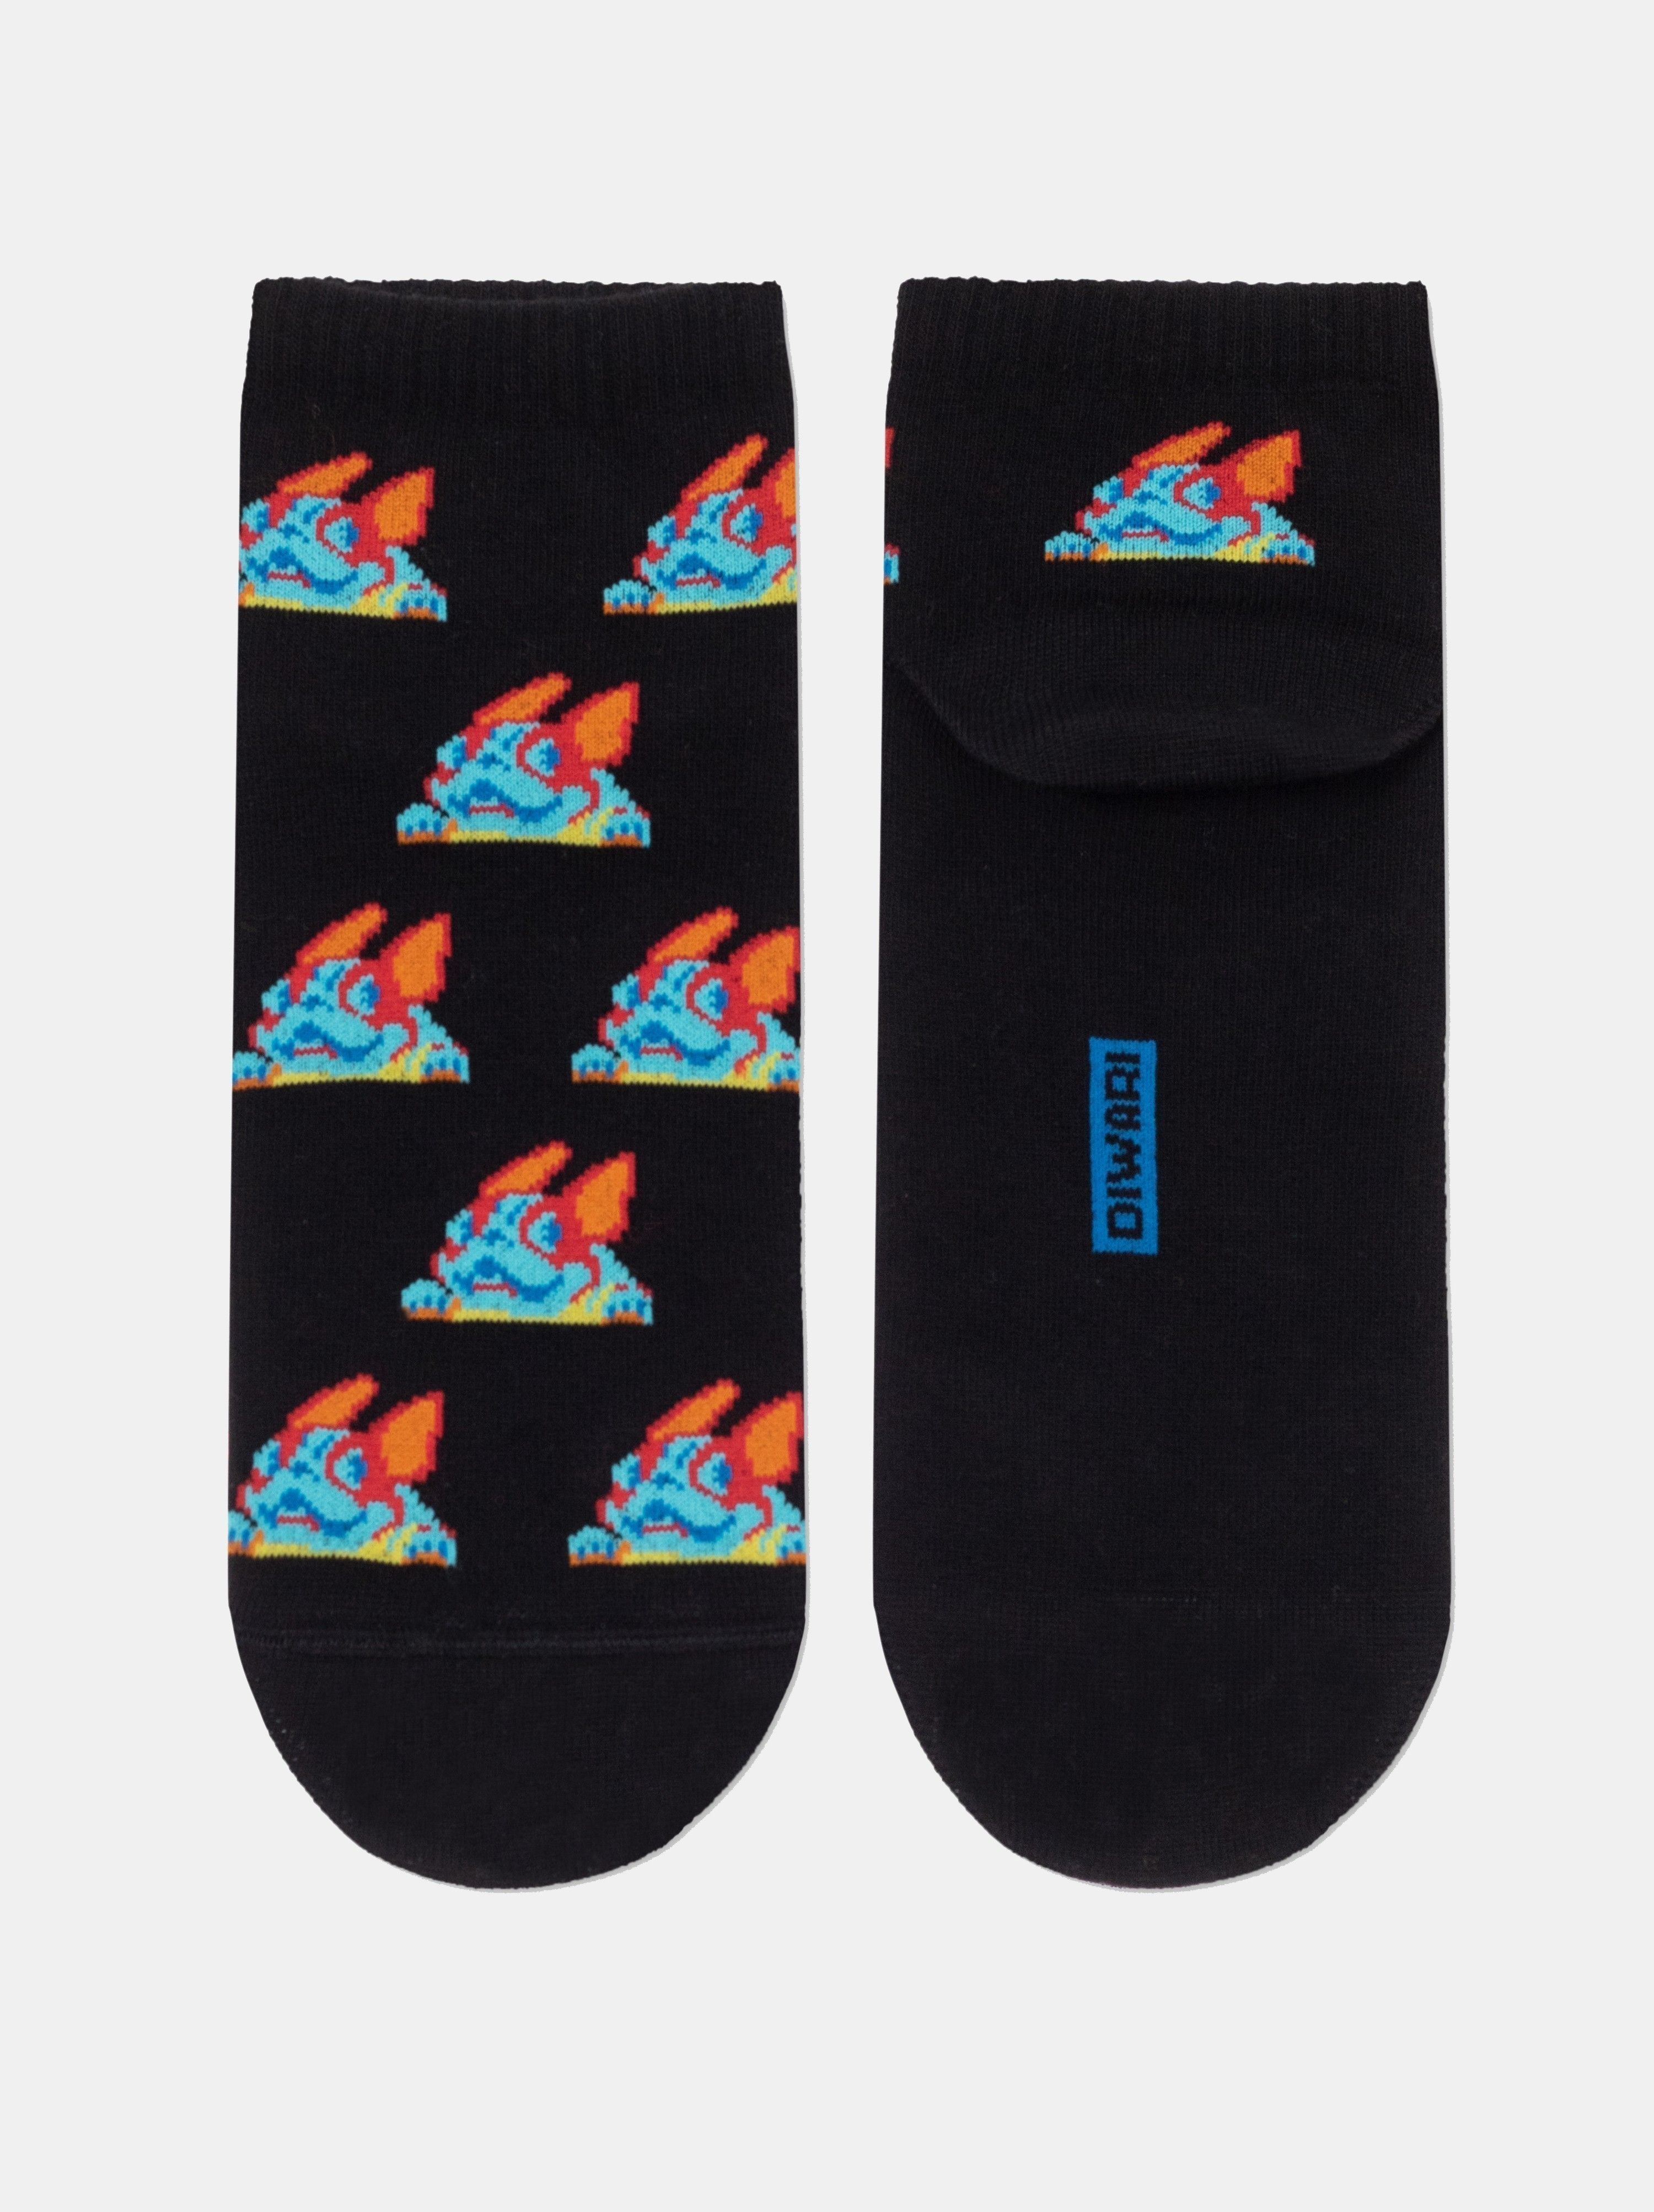 Укороченные носки из хлопка Conte ⭐️, цвет черный, размер 40-41 - фото 1